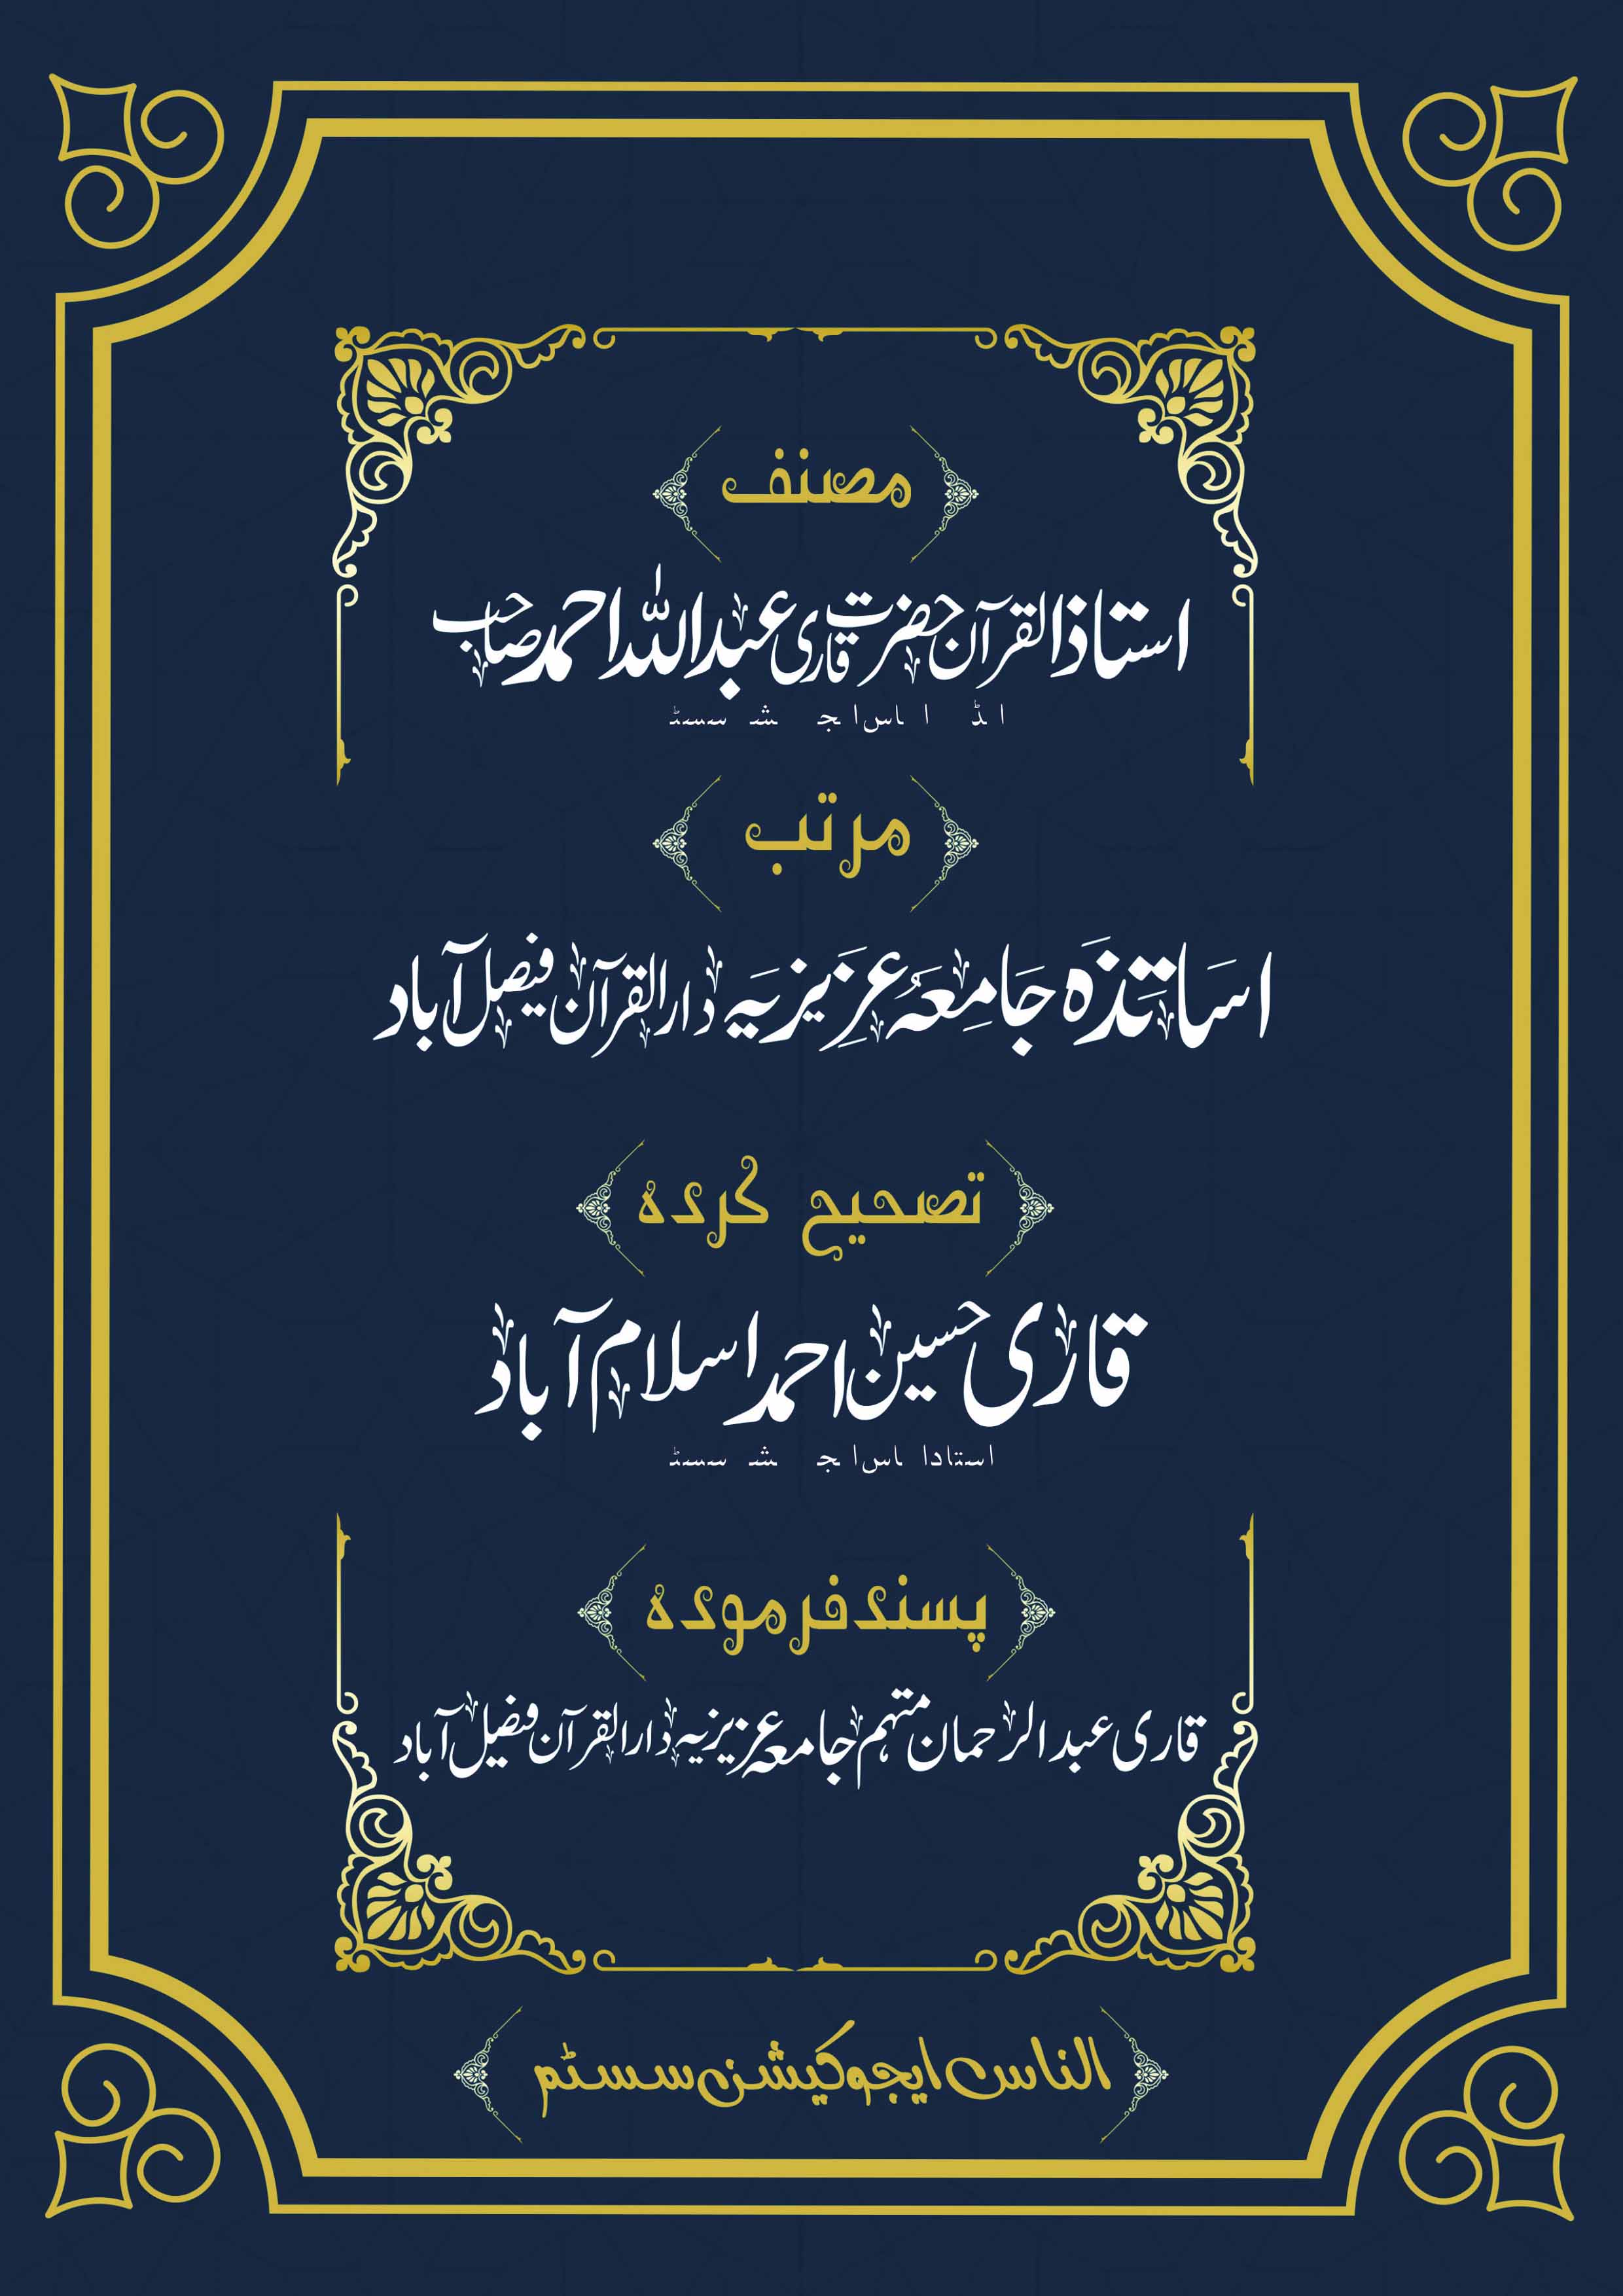 Read English Noorani Qaidah Page No 32, Practice Quran